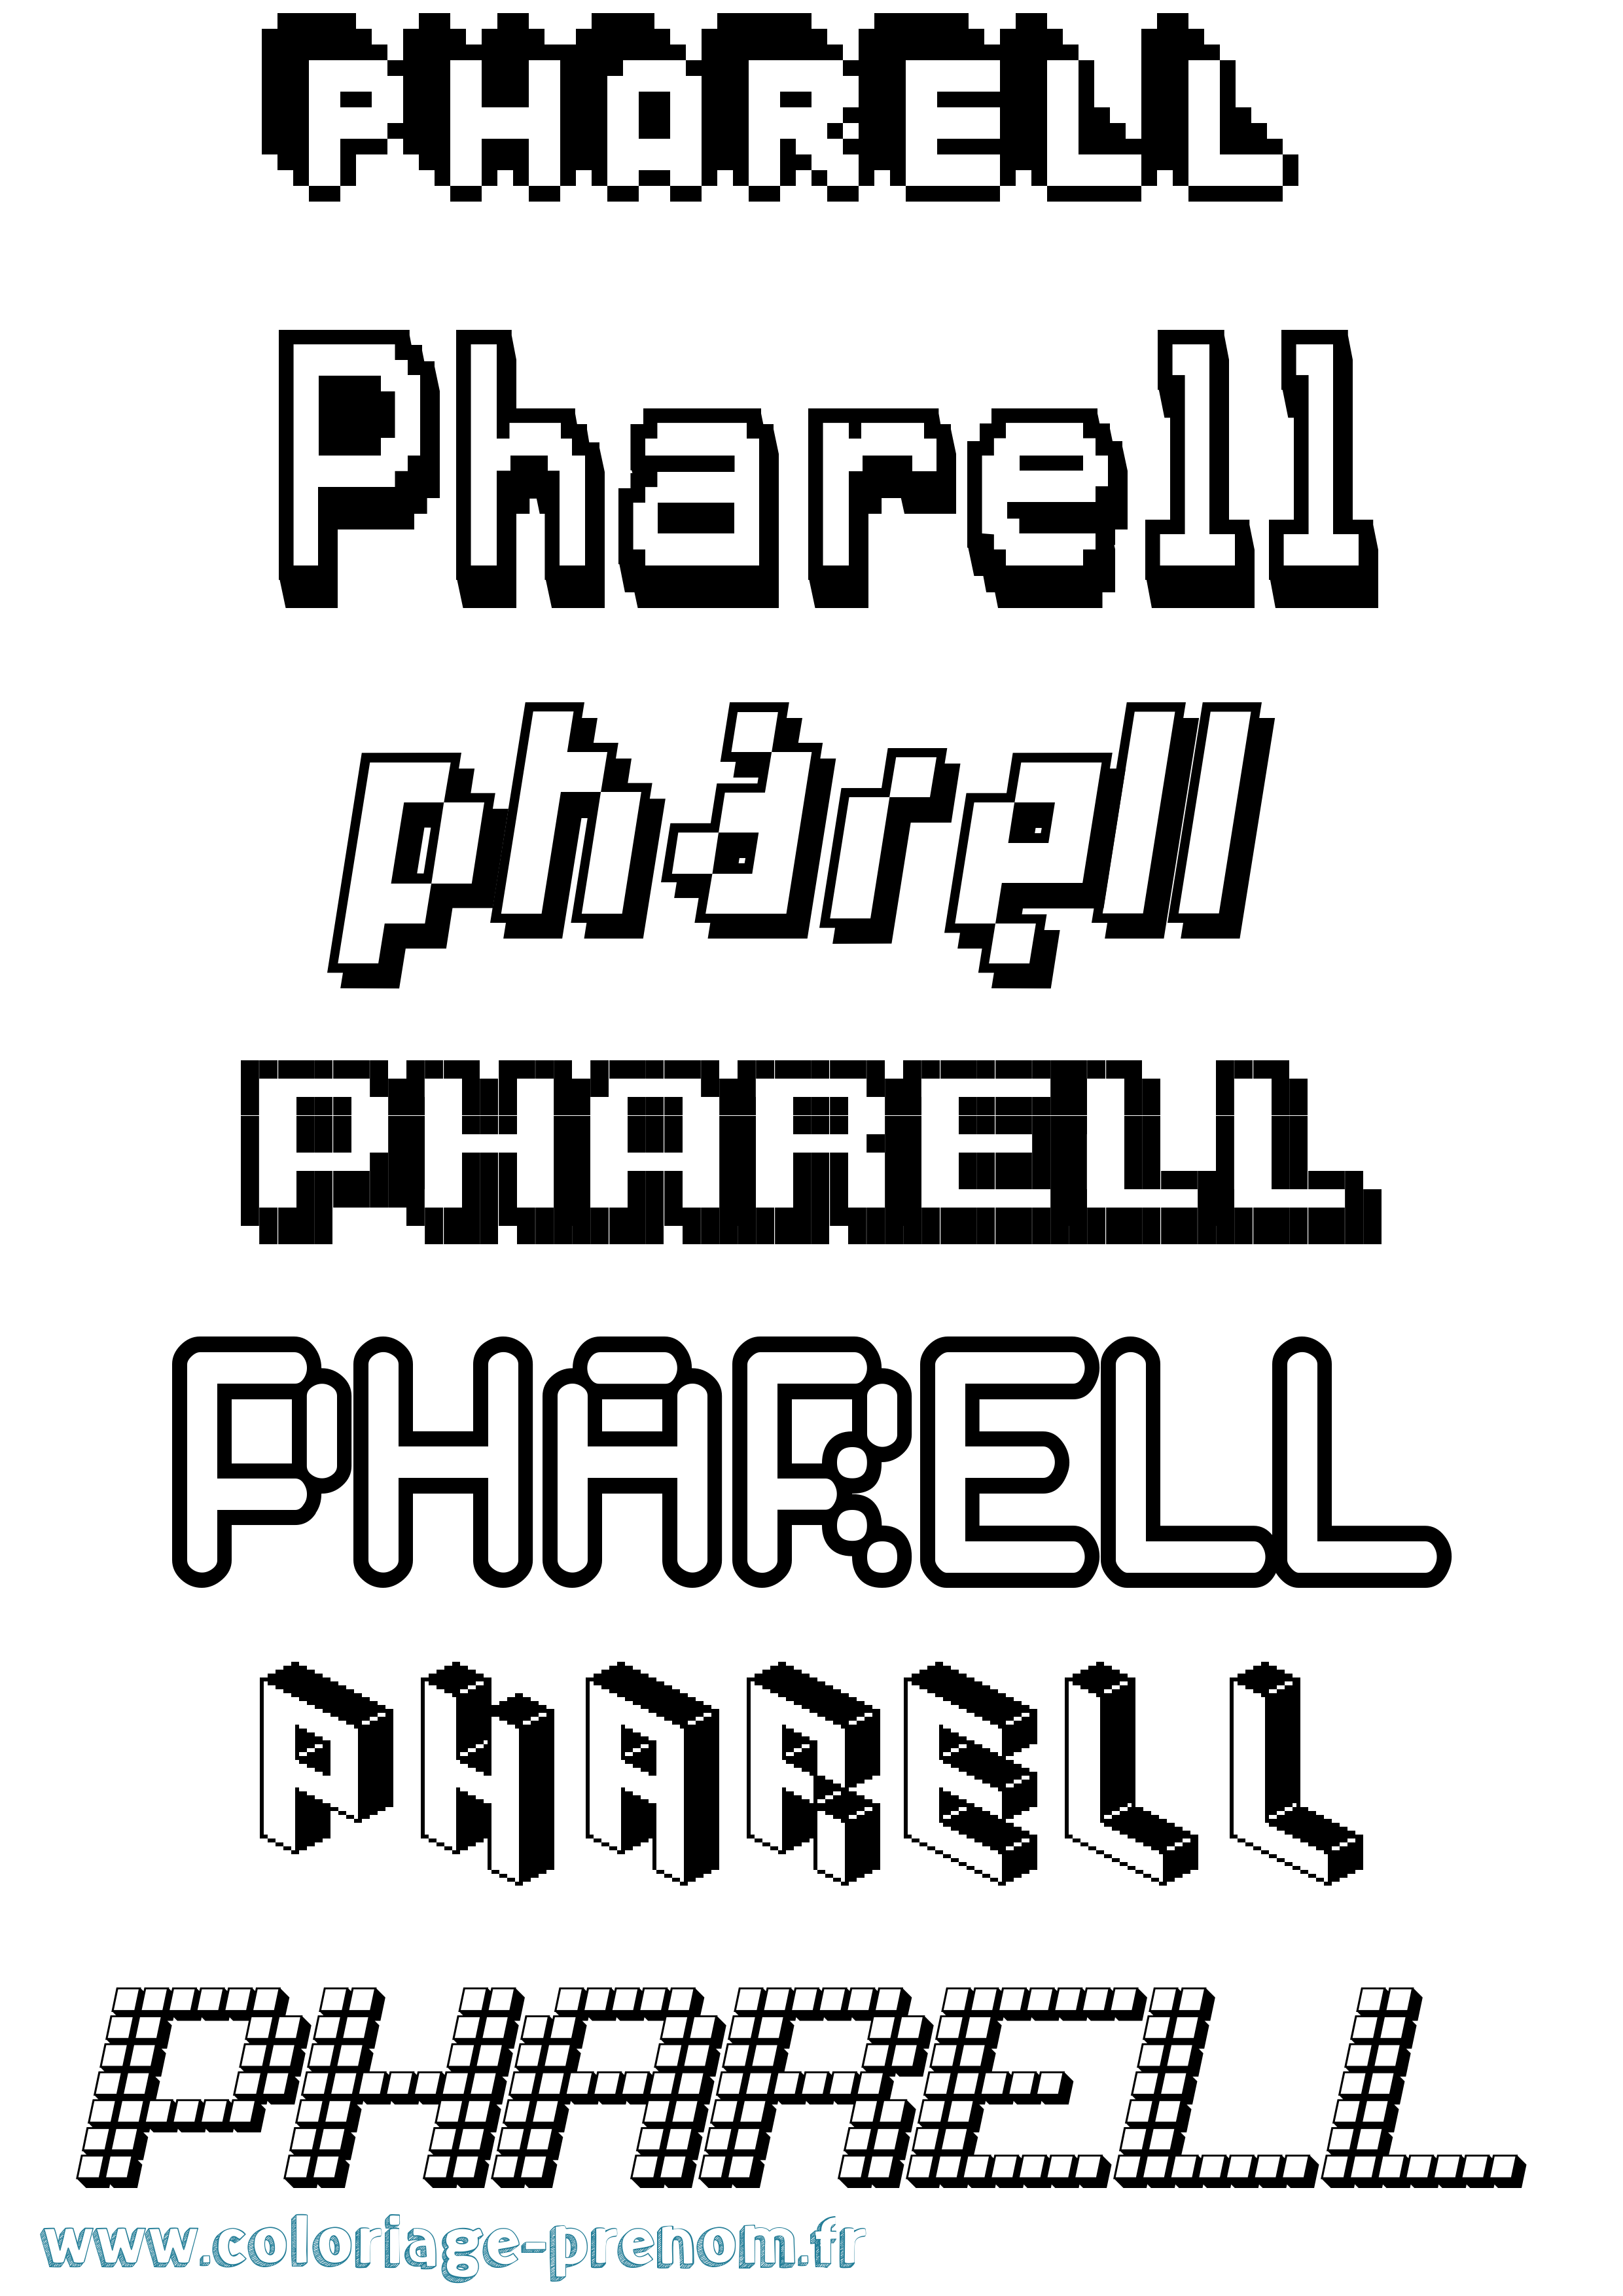 Coloriage prénom Pharell